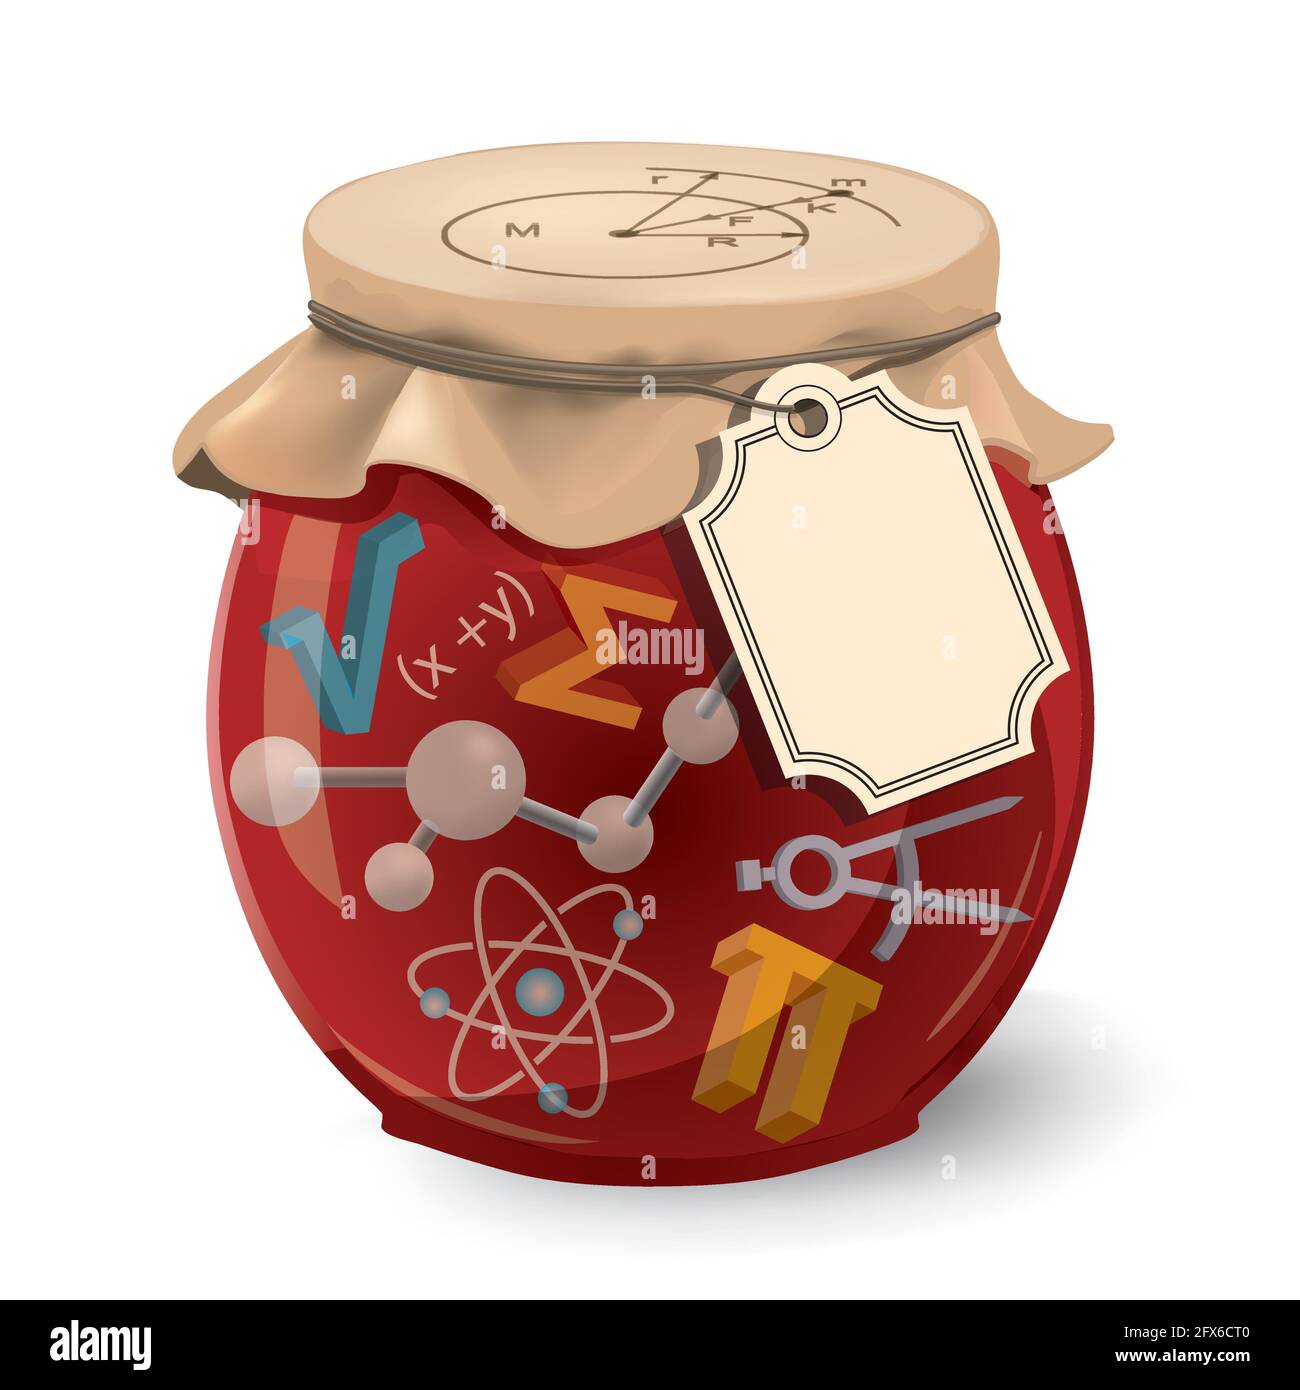 La scienza è la mia marmellata. Divertente concetto vintage. Illustrazione del vaso di vetro di jam con simboli 3d matematici e fisici ed etichetta con il posto per il vostro testo. Illustrazione Vettoriale